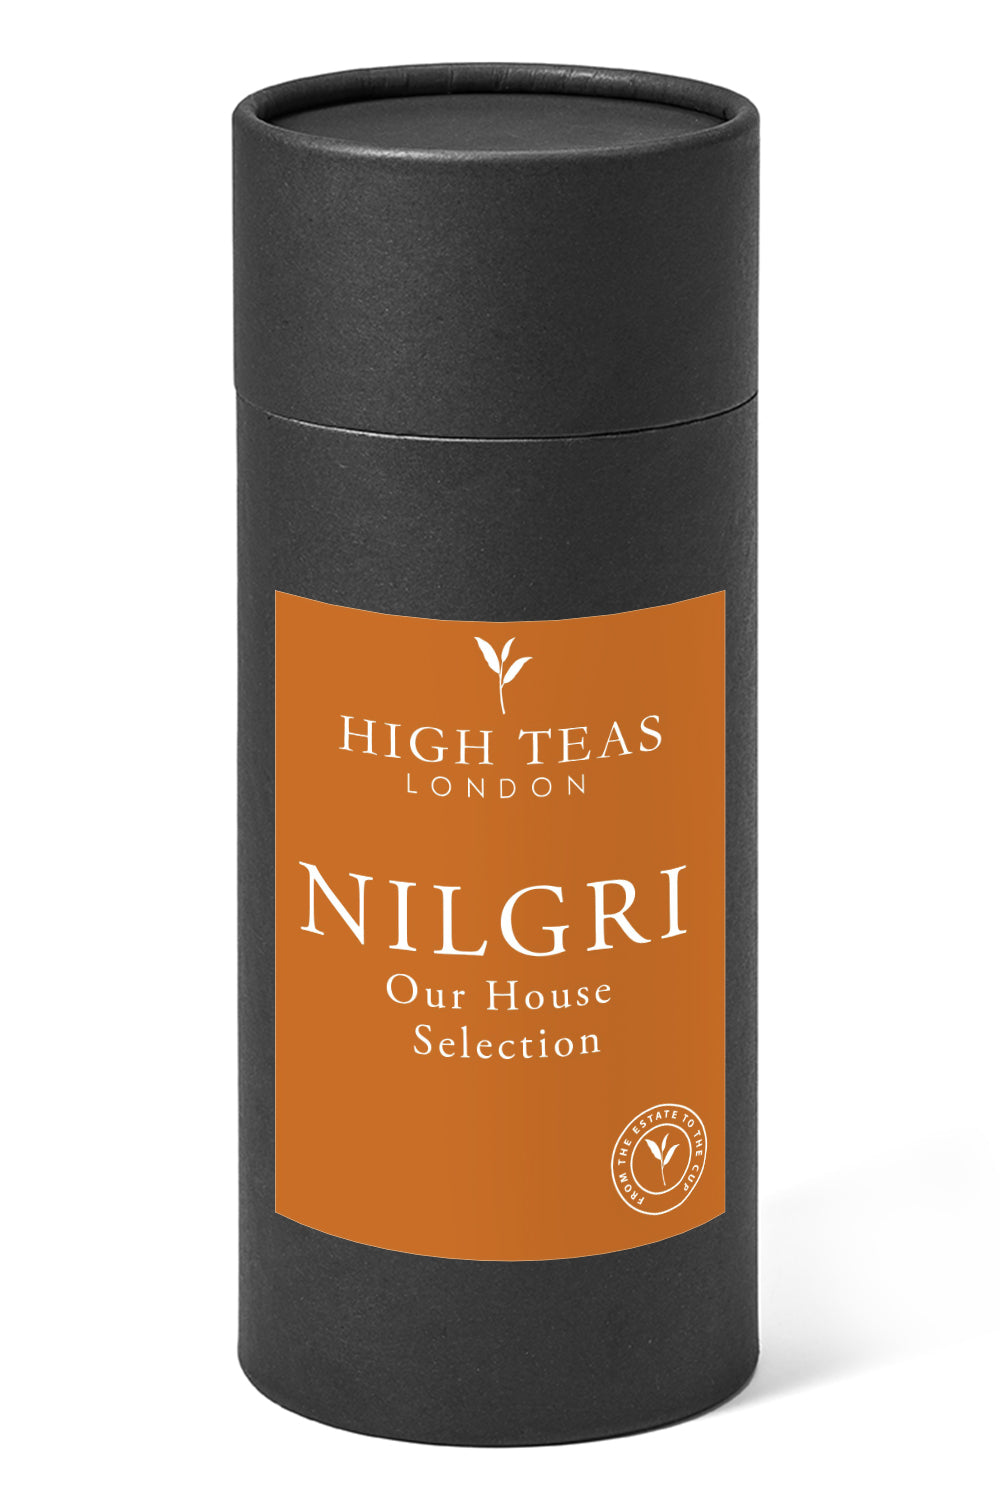 Nilgiri "Blue Mountain" SFTGFOP1 - Our House Selection-150g gift-Loose Leaf Tea-High Teas